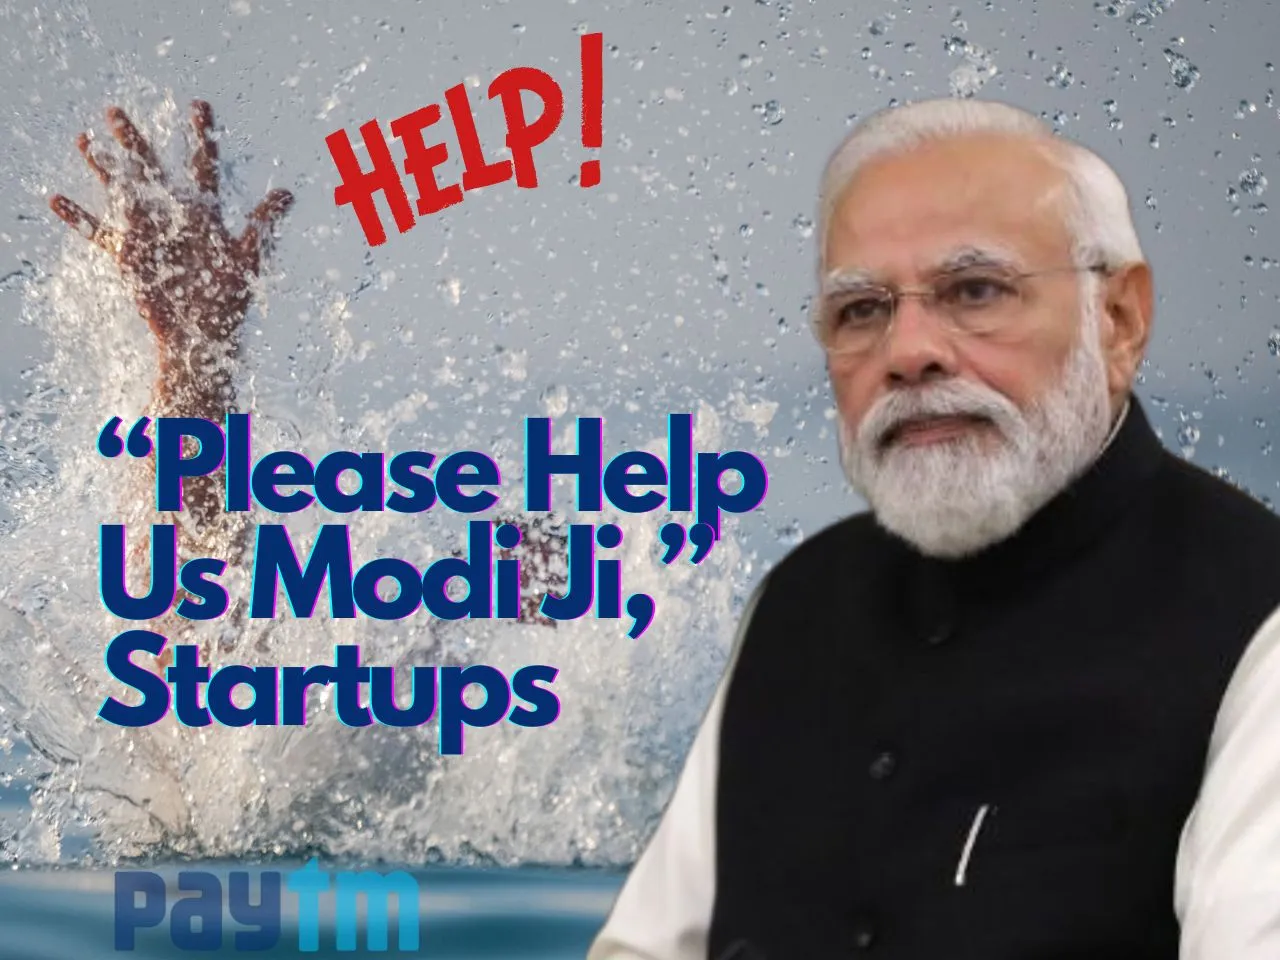 PM Modi Startups